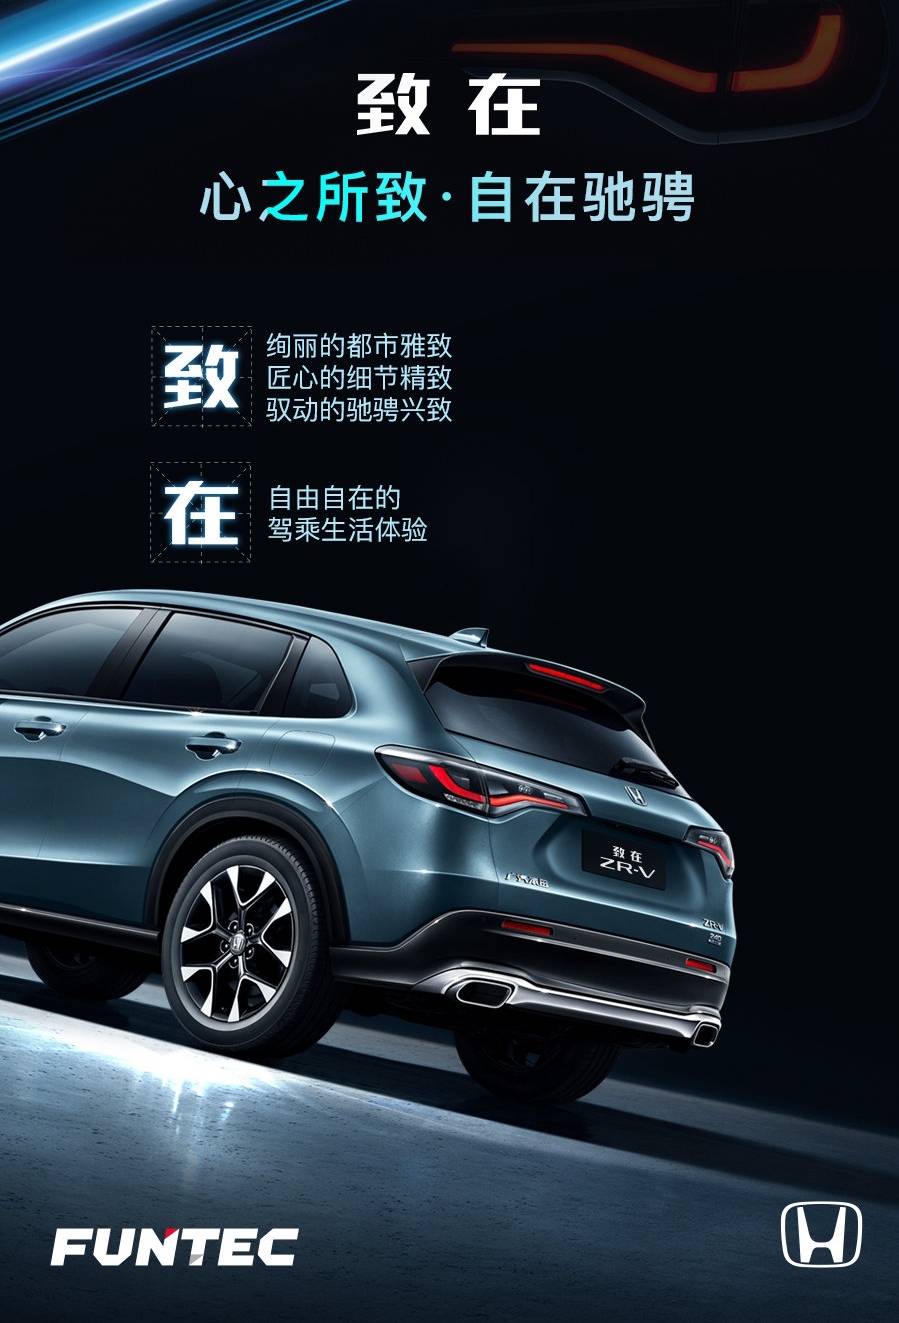 董車日報 | 特斯拉或在上海建第二工廠 / 福特資深工程師加入蘋果汽車 / 廣汽本田帶來全新 SUV